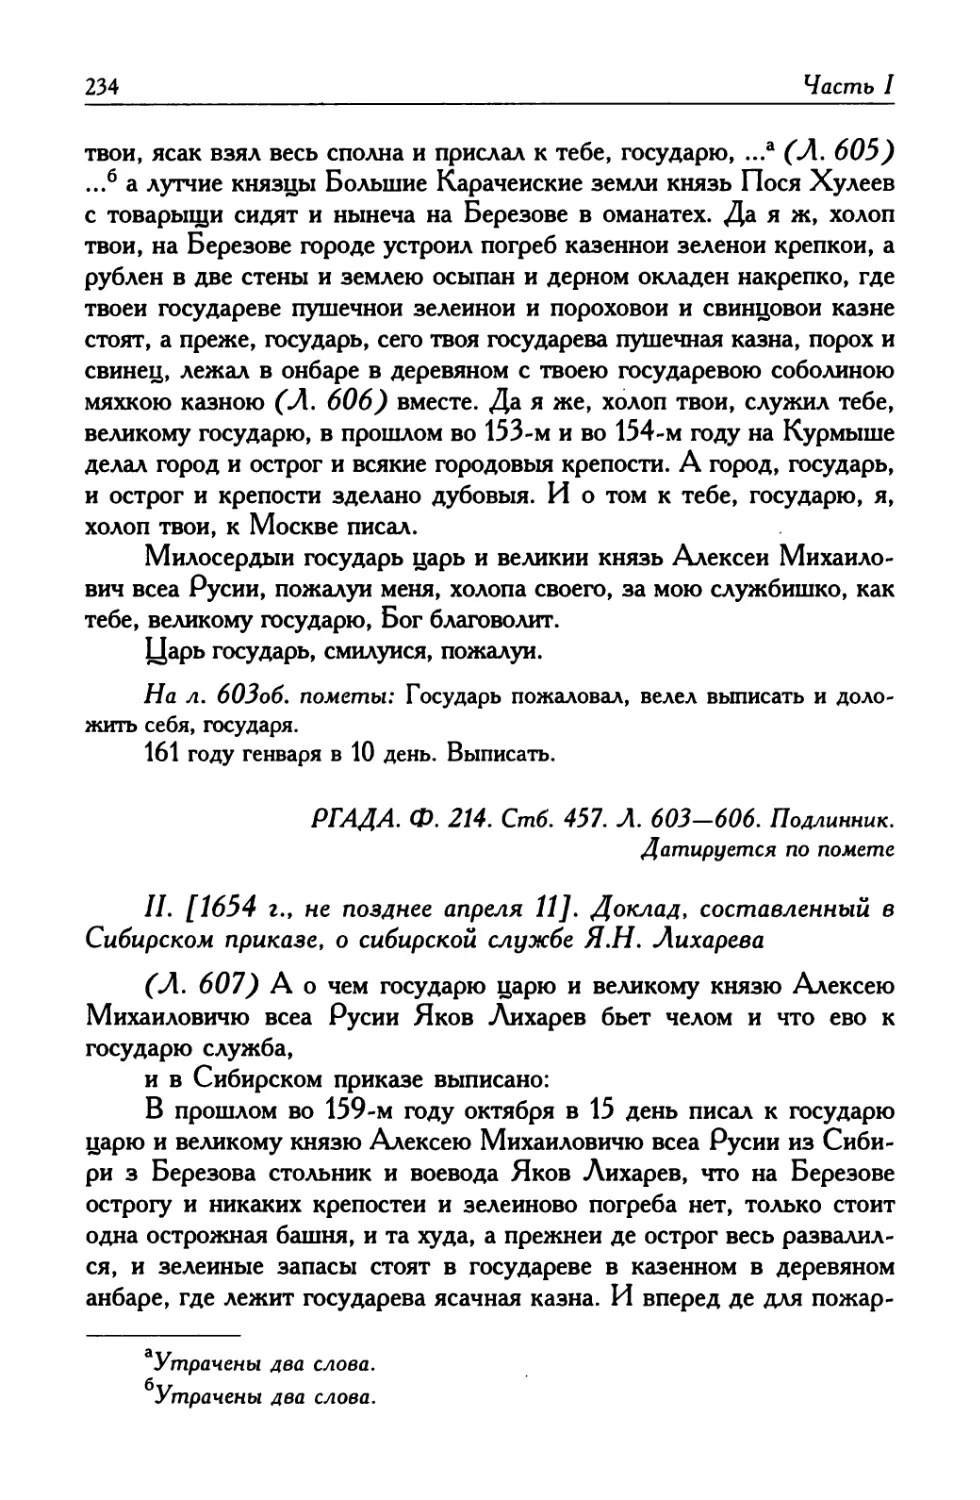 II. [1654 г., не позднее апреля 11]. Доклад, составленный в Сибирском приказе, о сибирской службе Я. Н. Лихарева